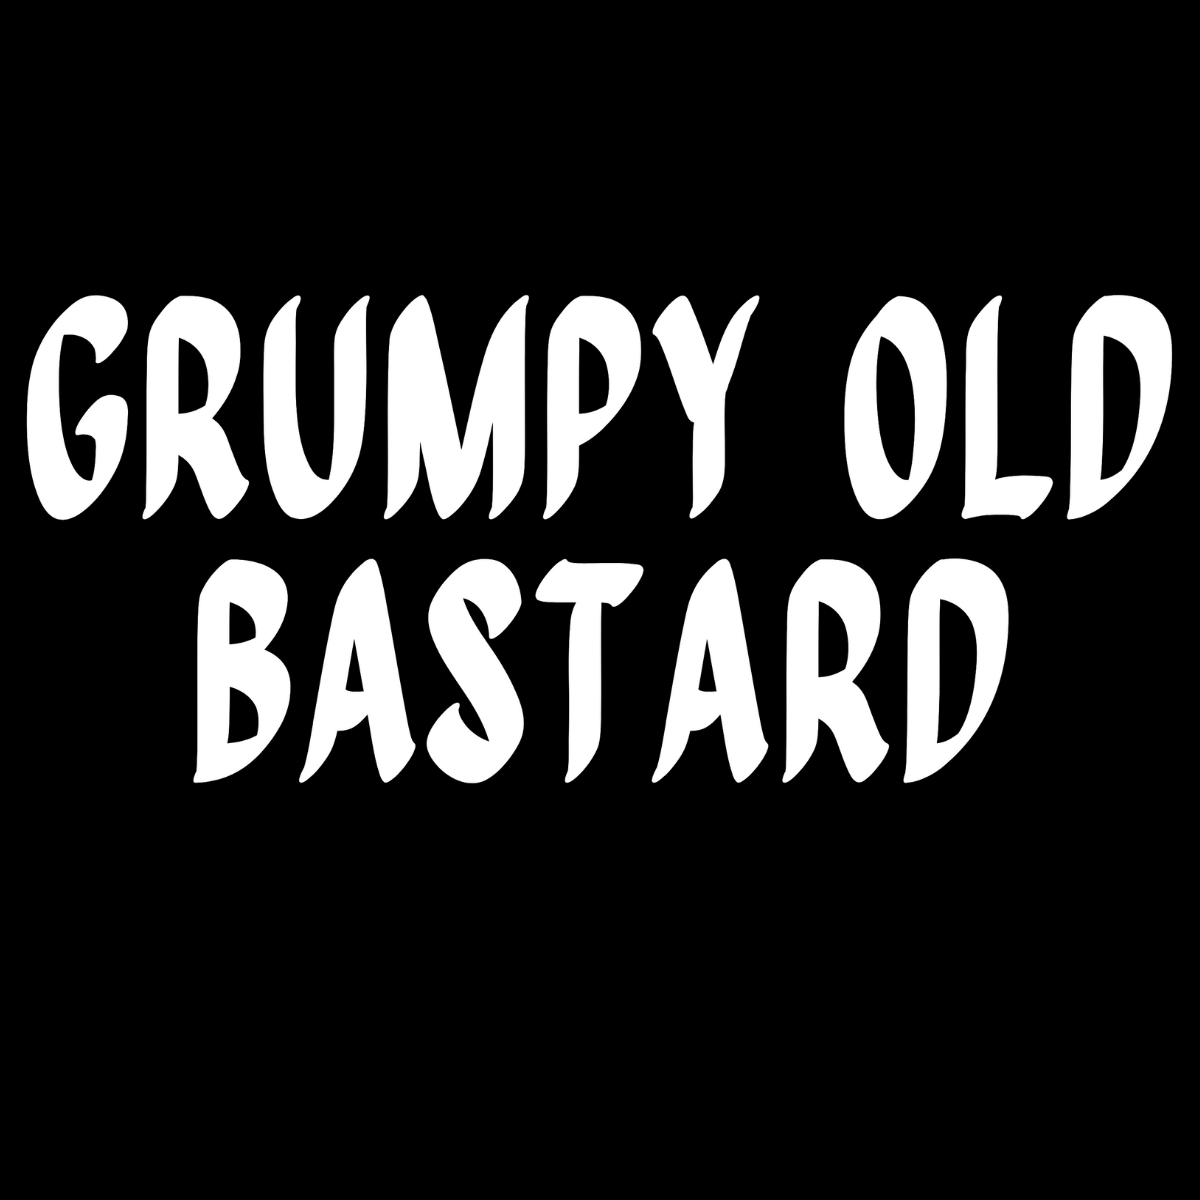 Grumpy Old Bastard Tee